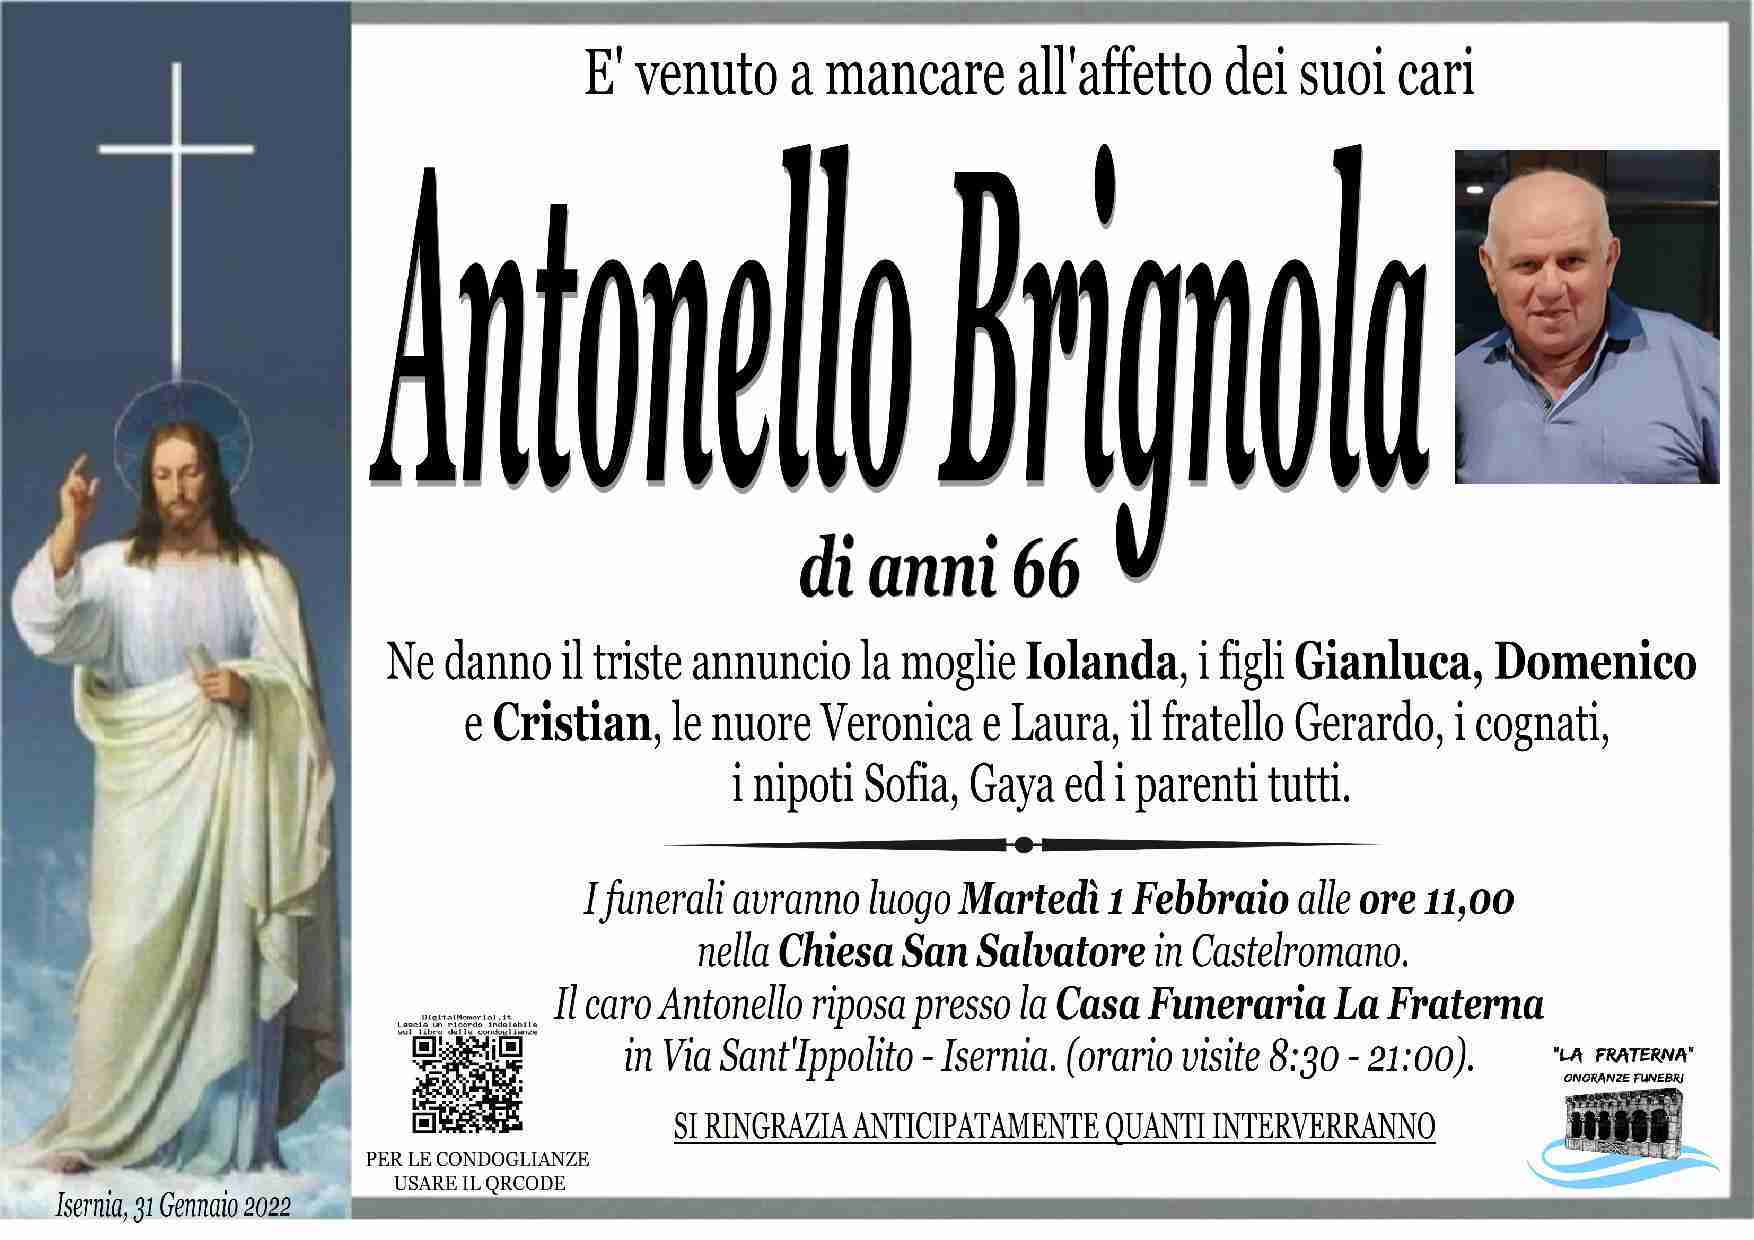 Antonello Brignola